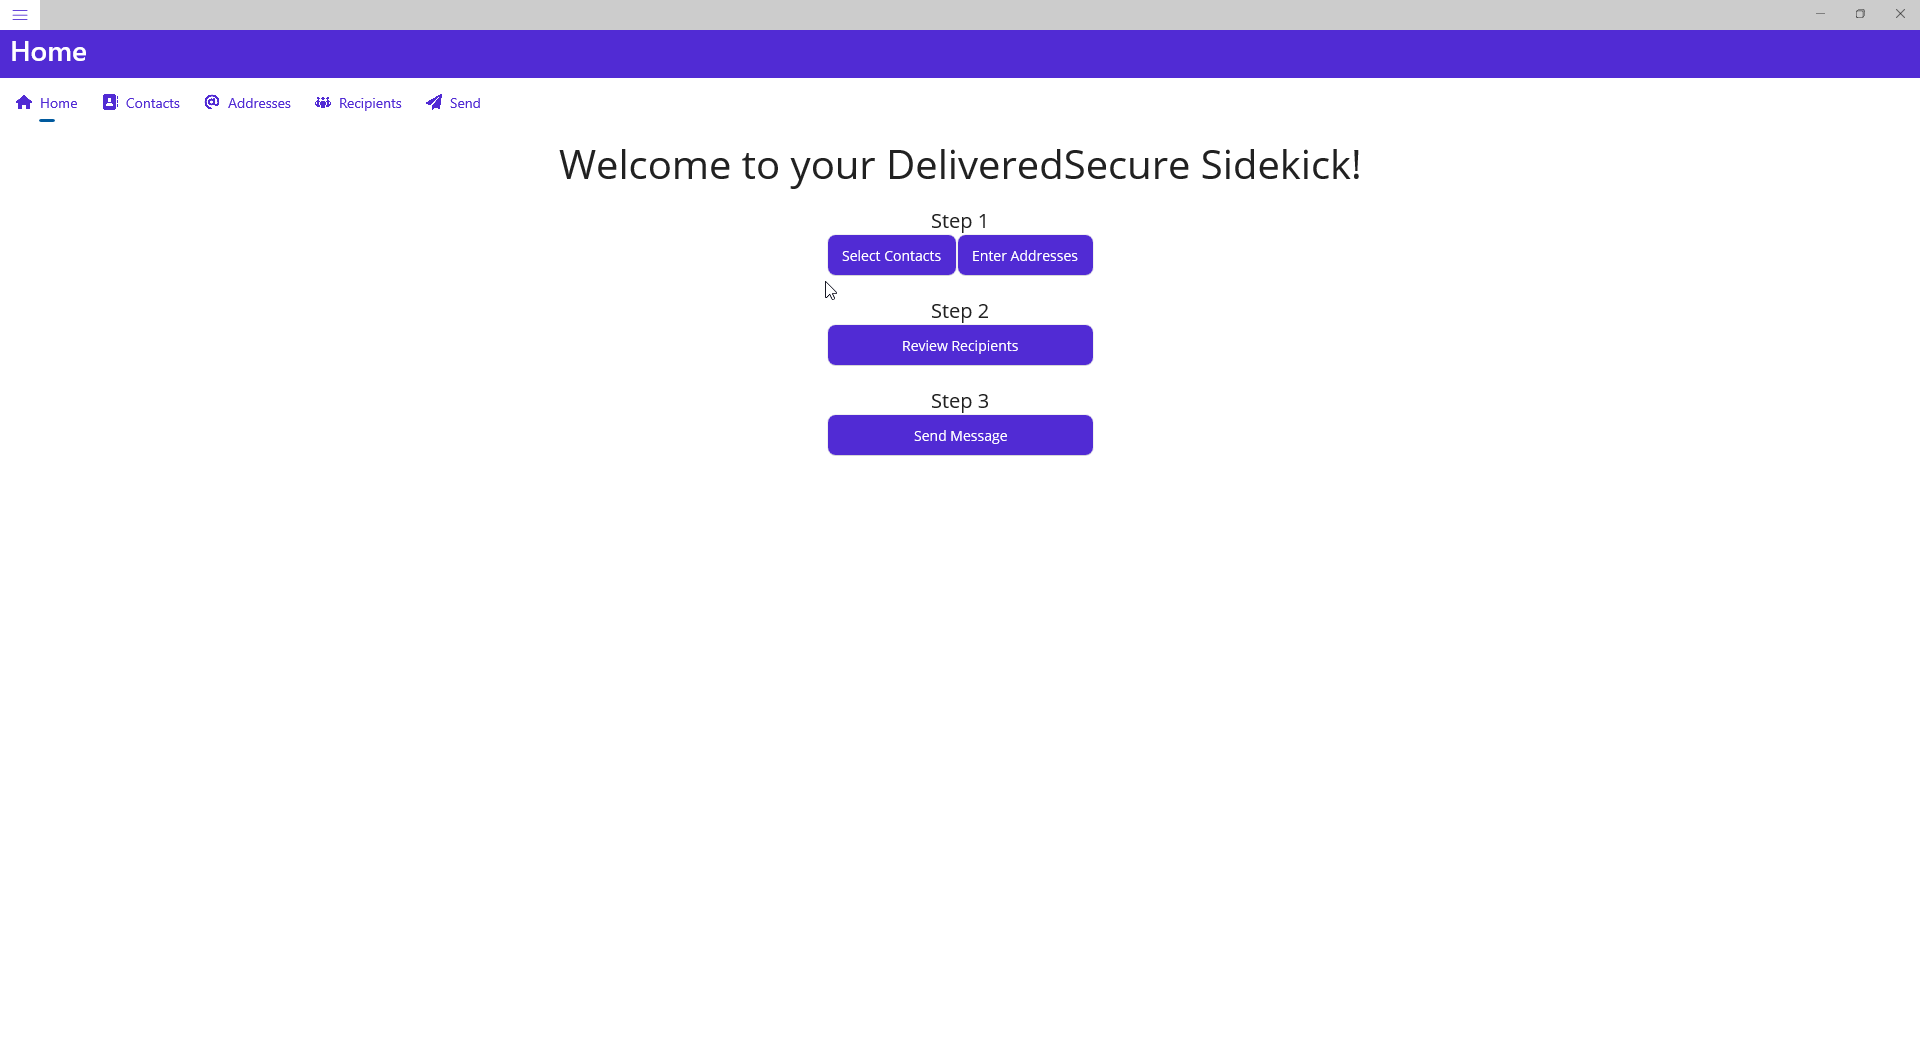 DeliveredSecure Sidekick